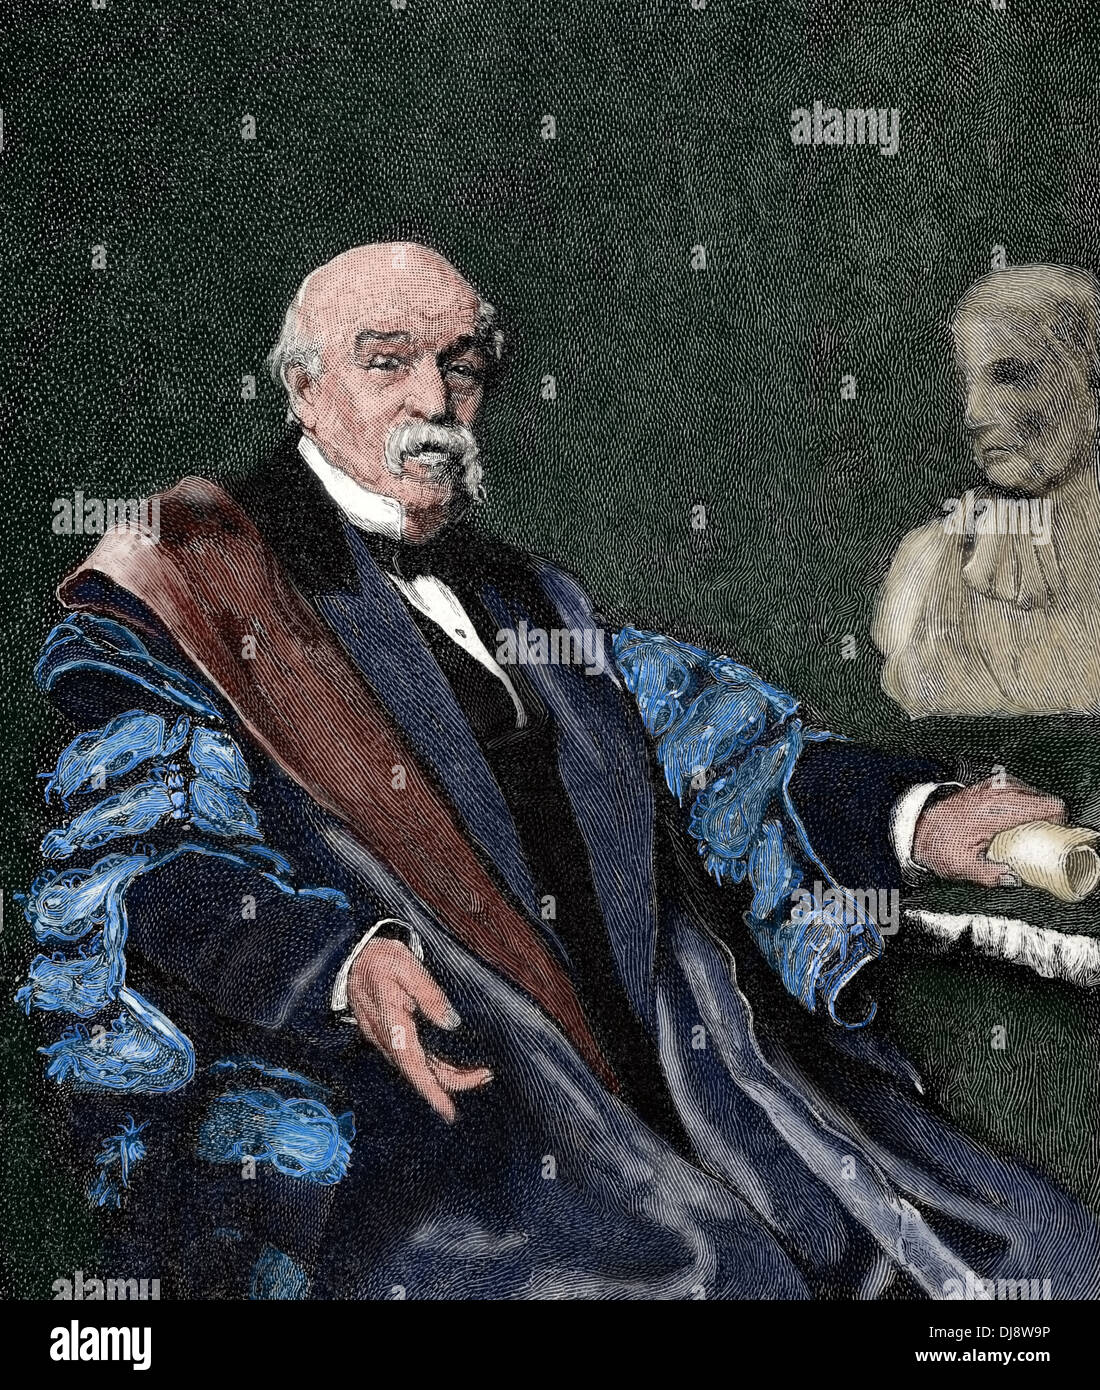 Sir William Jenner, primer Baronet (1815-1898). Médico inglés. Descubrió la distinción entre el tifus y la fiebre tifoidea. Coloreada. Foto de stock